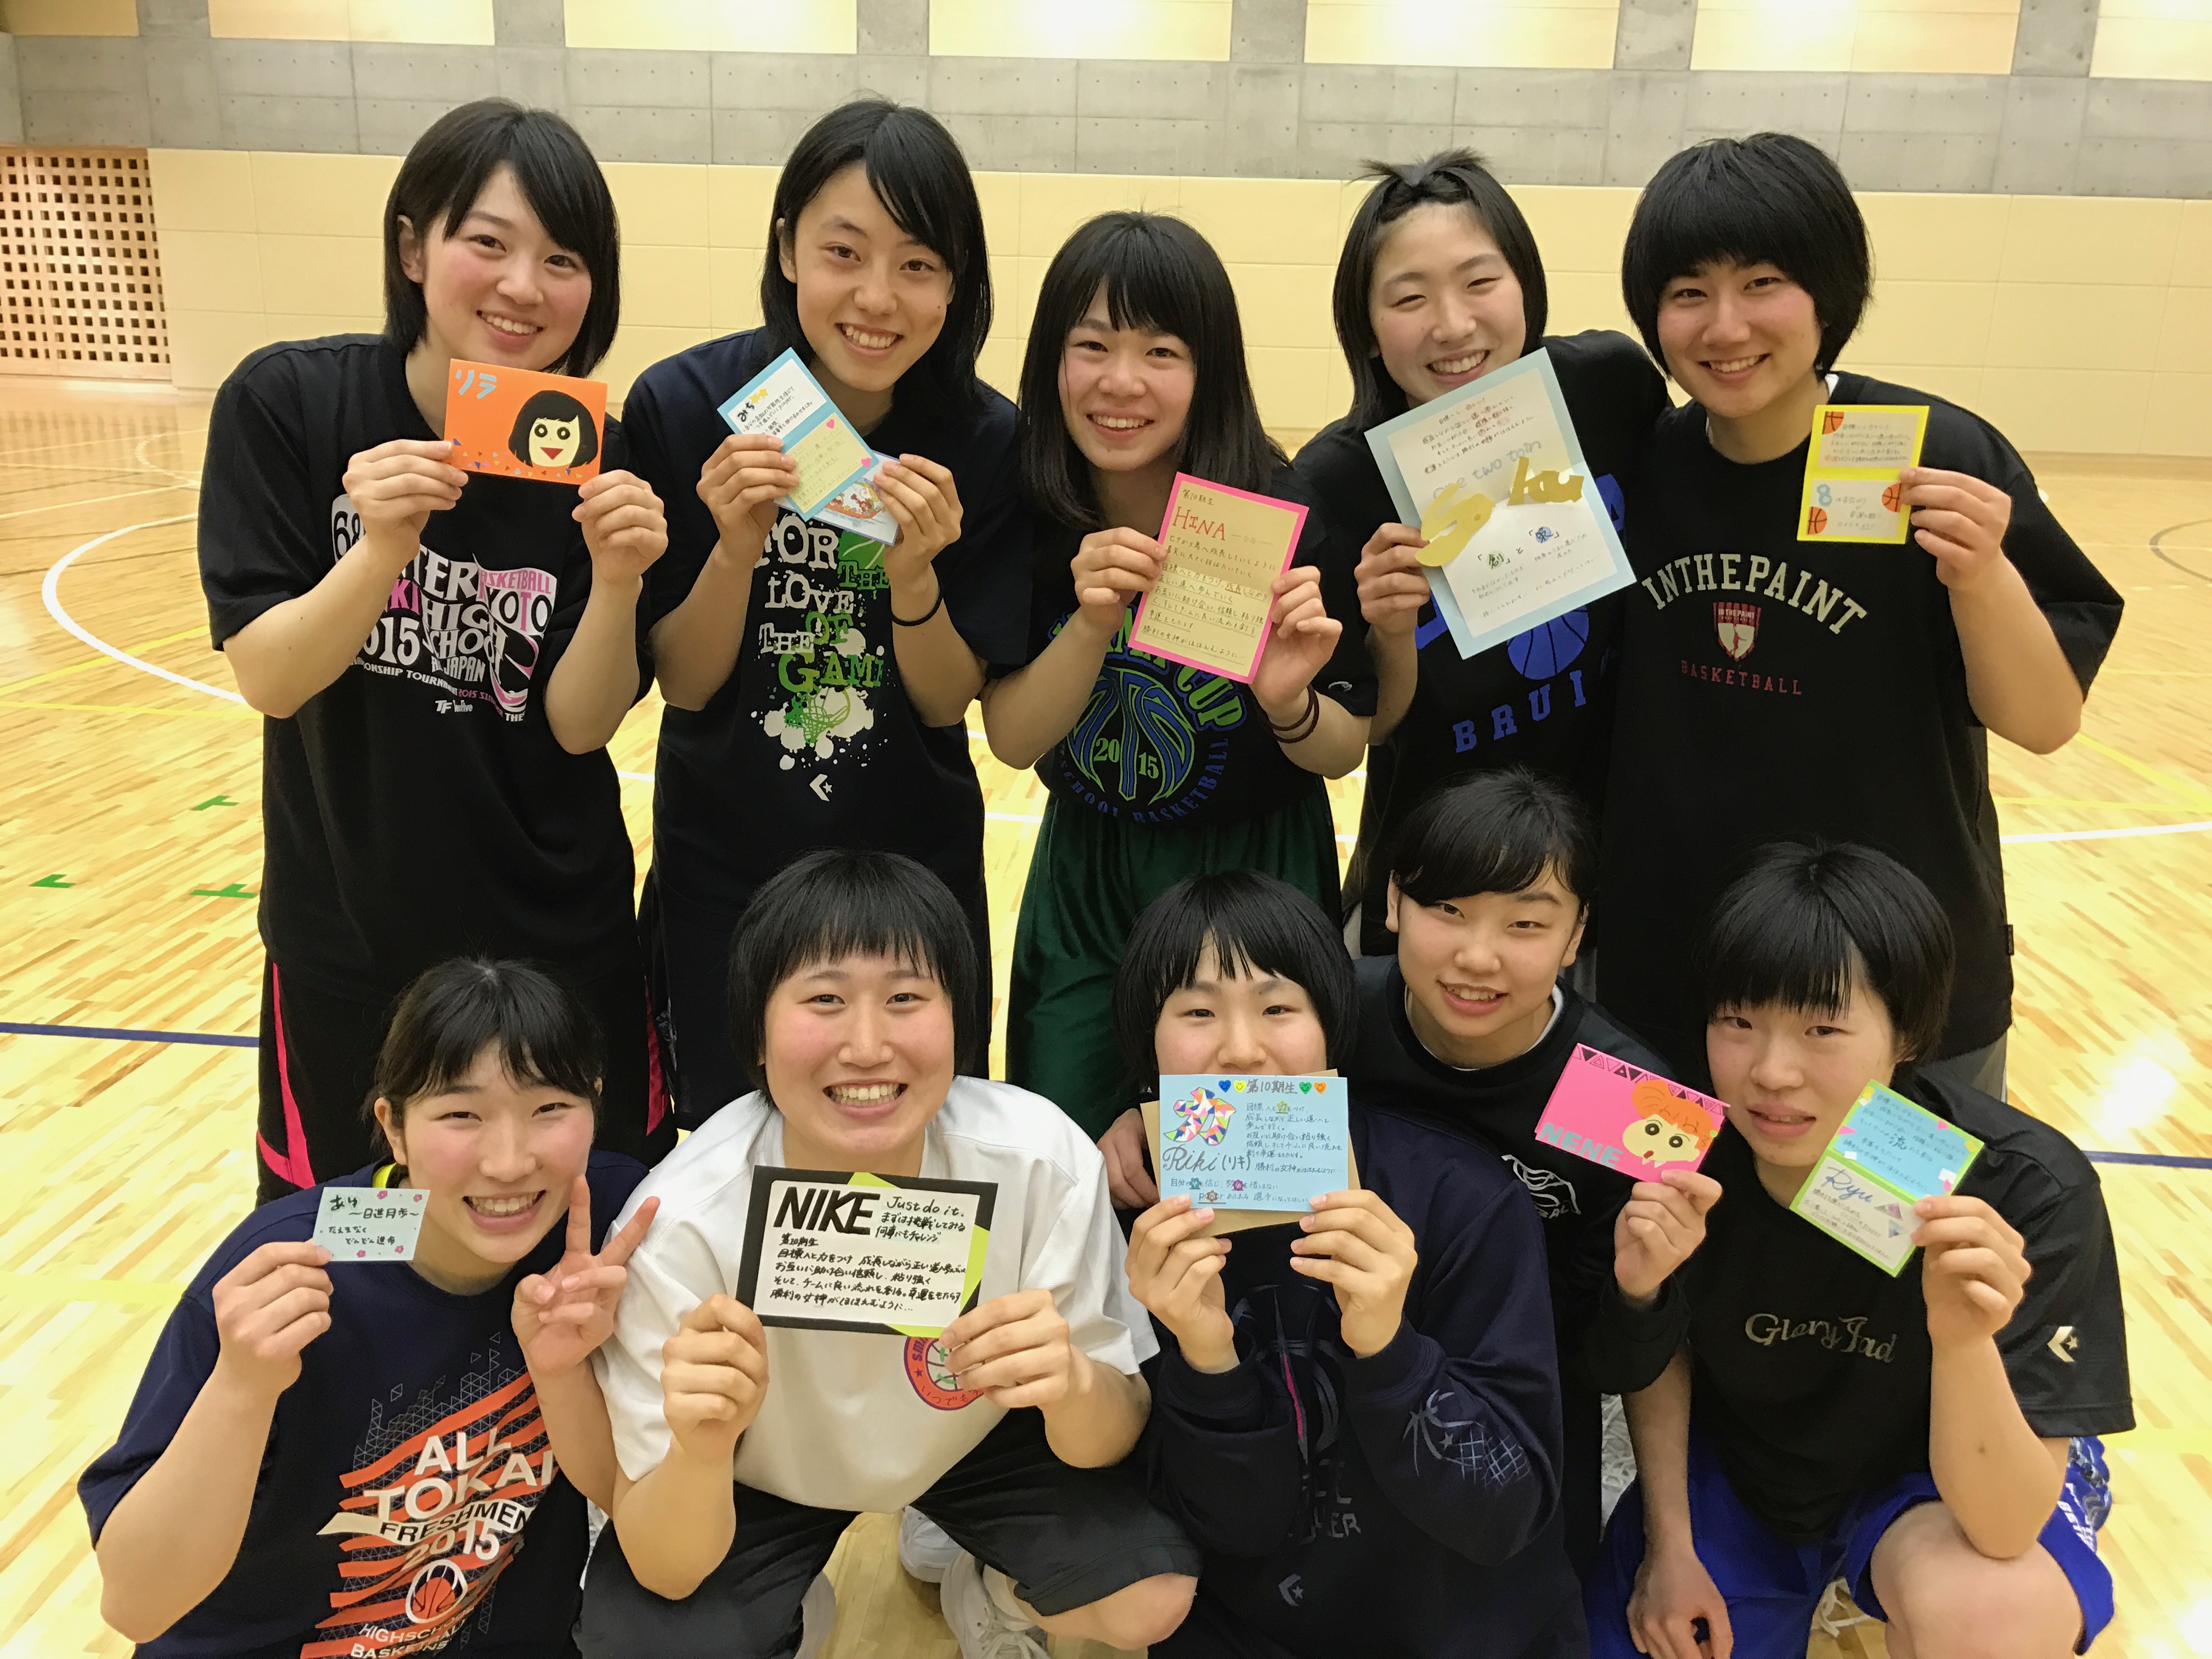 桐蔭横浜大学女子バスケットボール部 ニュース